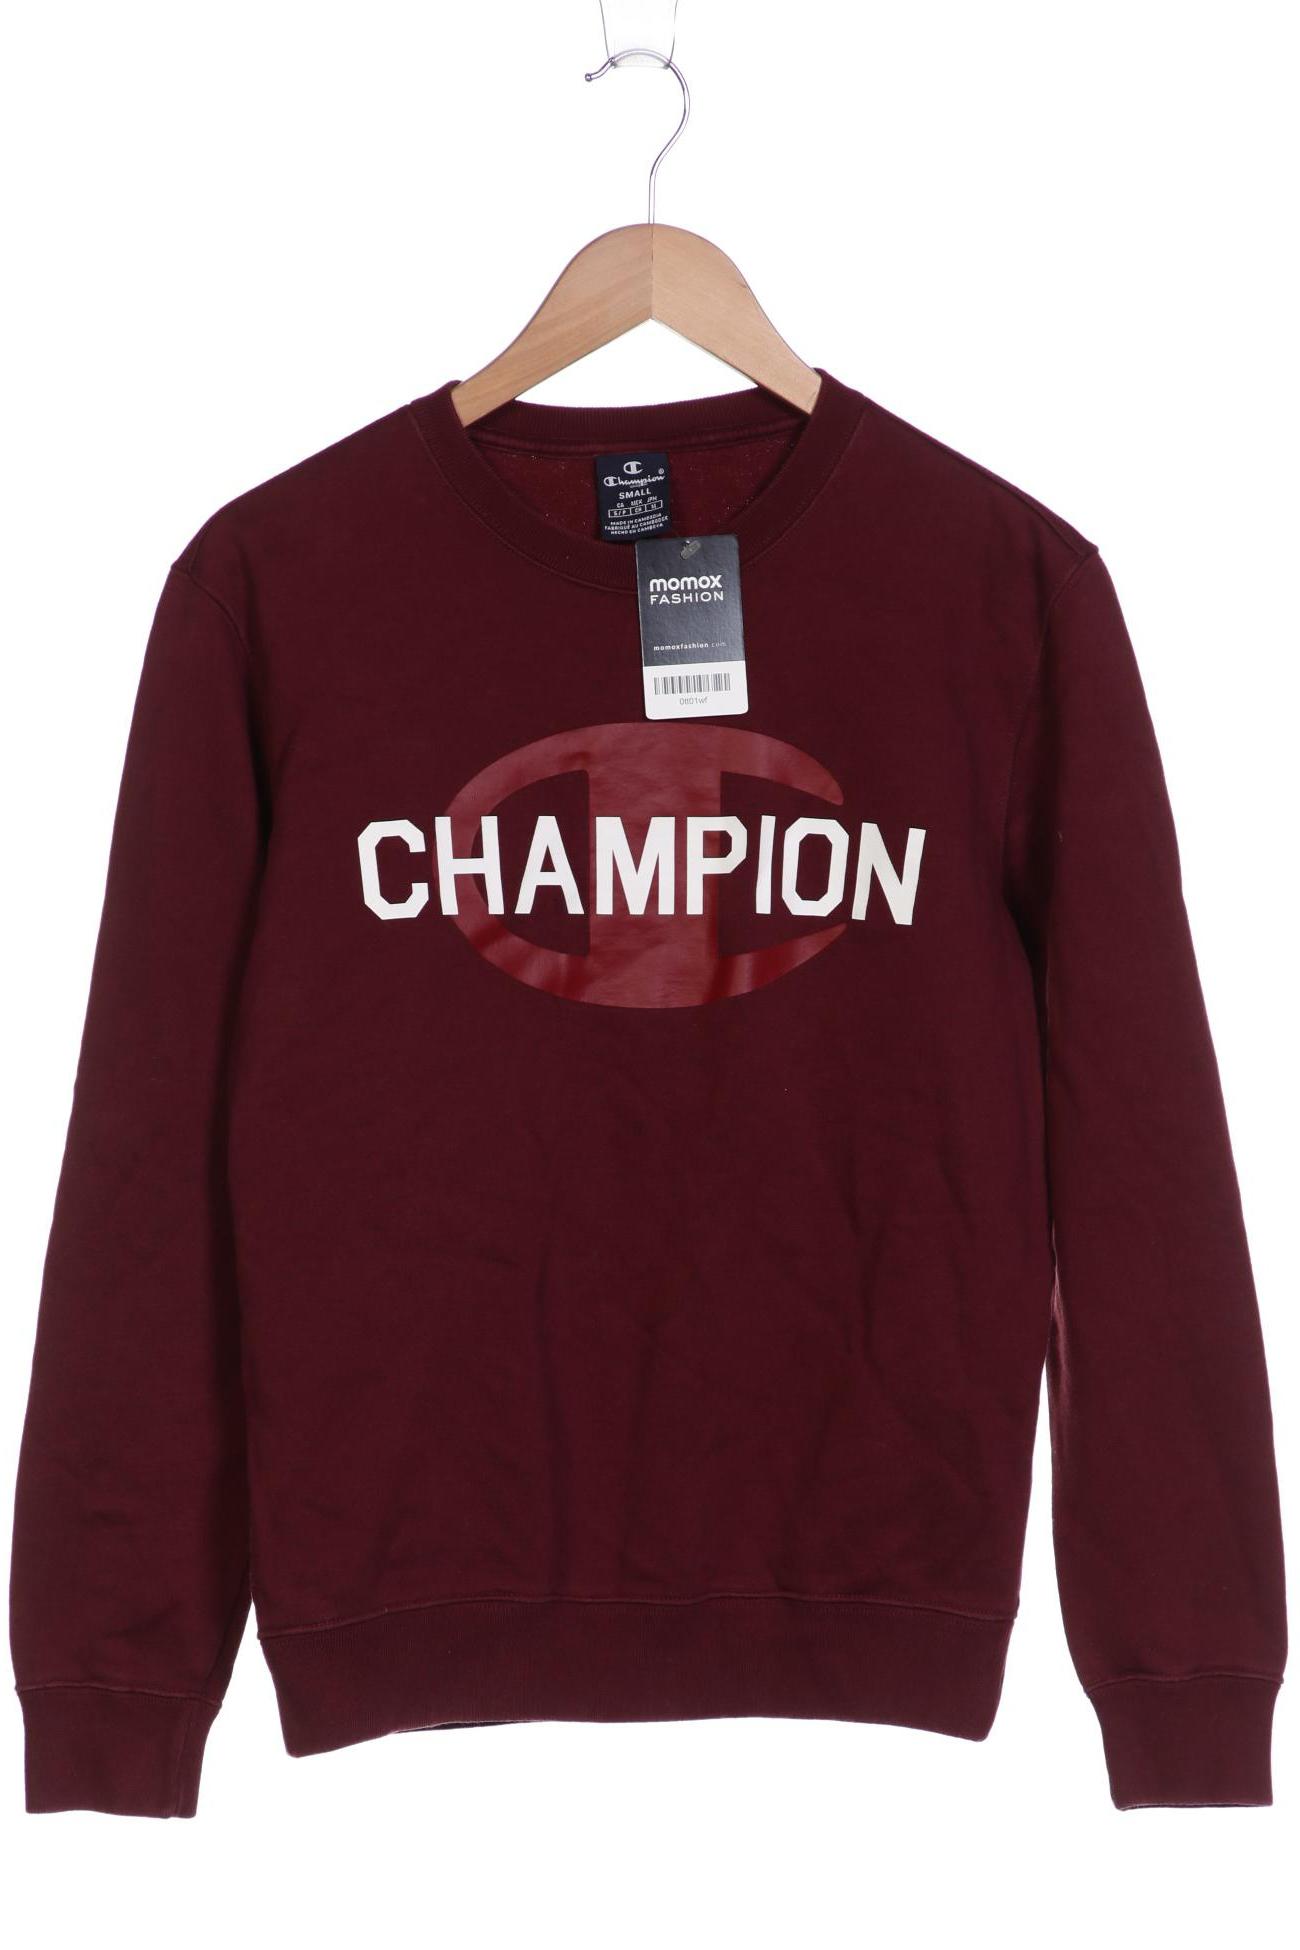 Champion Herren Sweatshirt, bordeaux, Gr. 46 von Champion